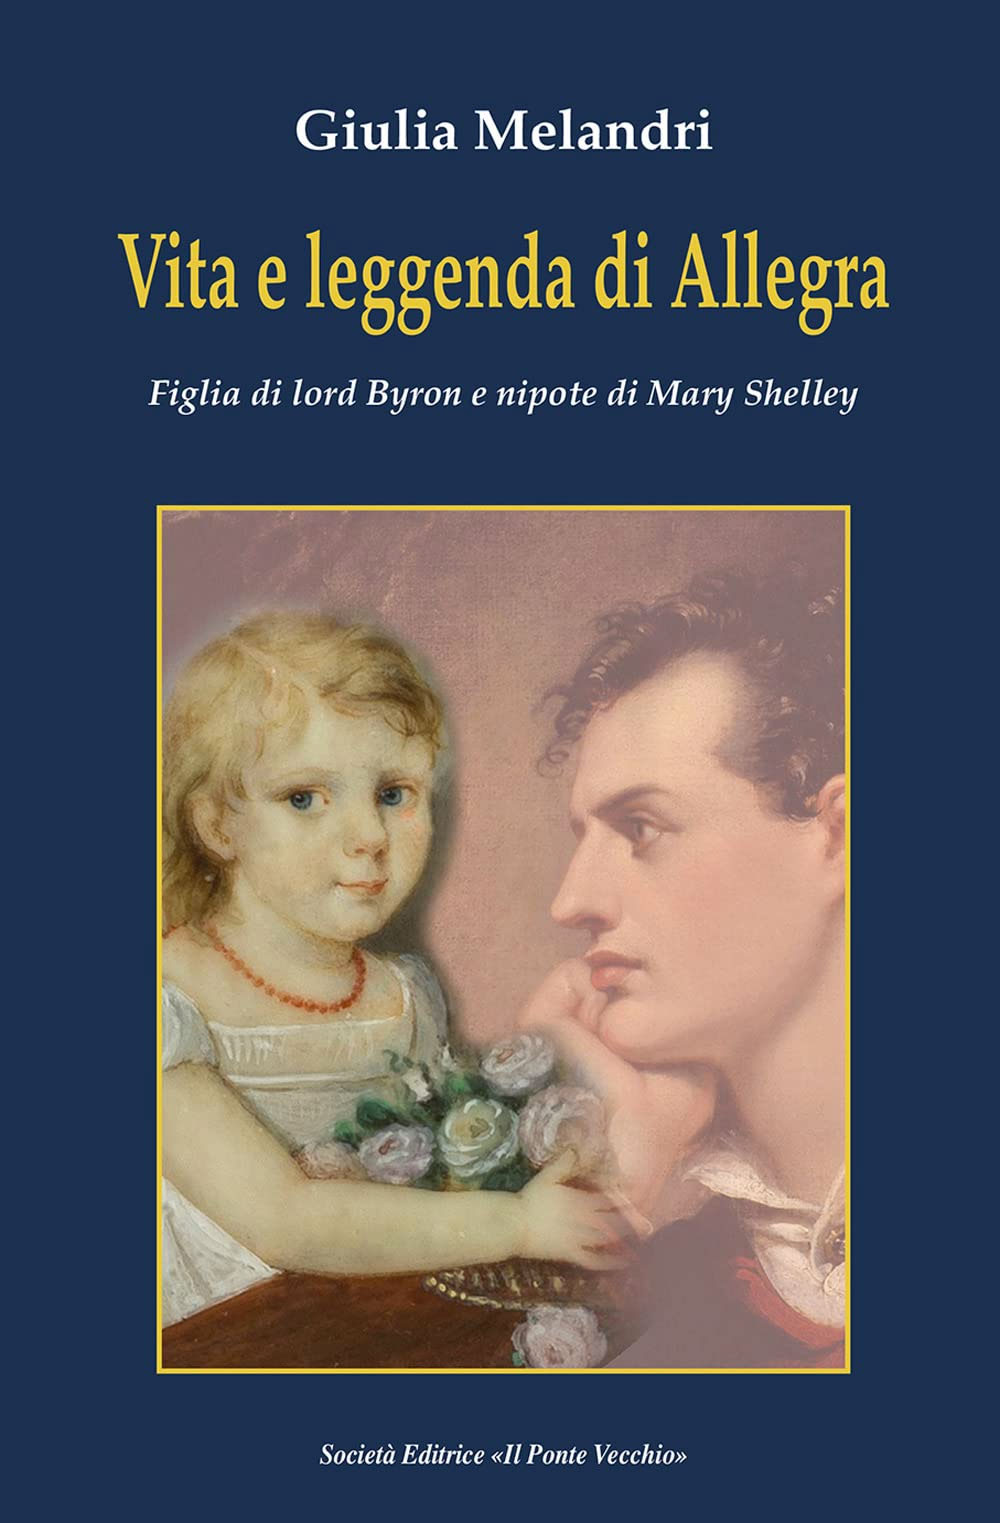 La copertina del libro di Giulia Melandri su Allegra Byron